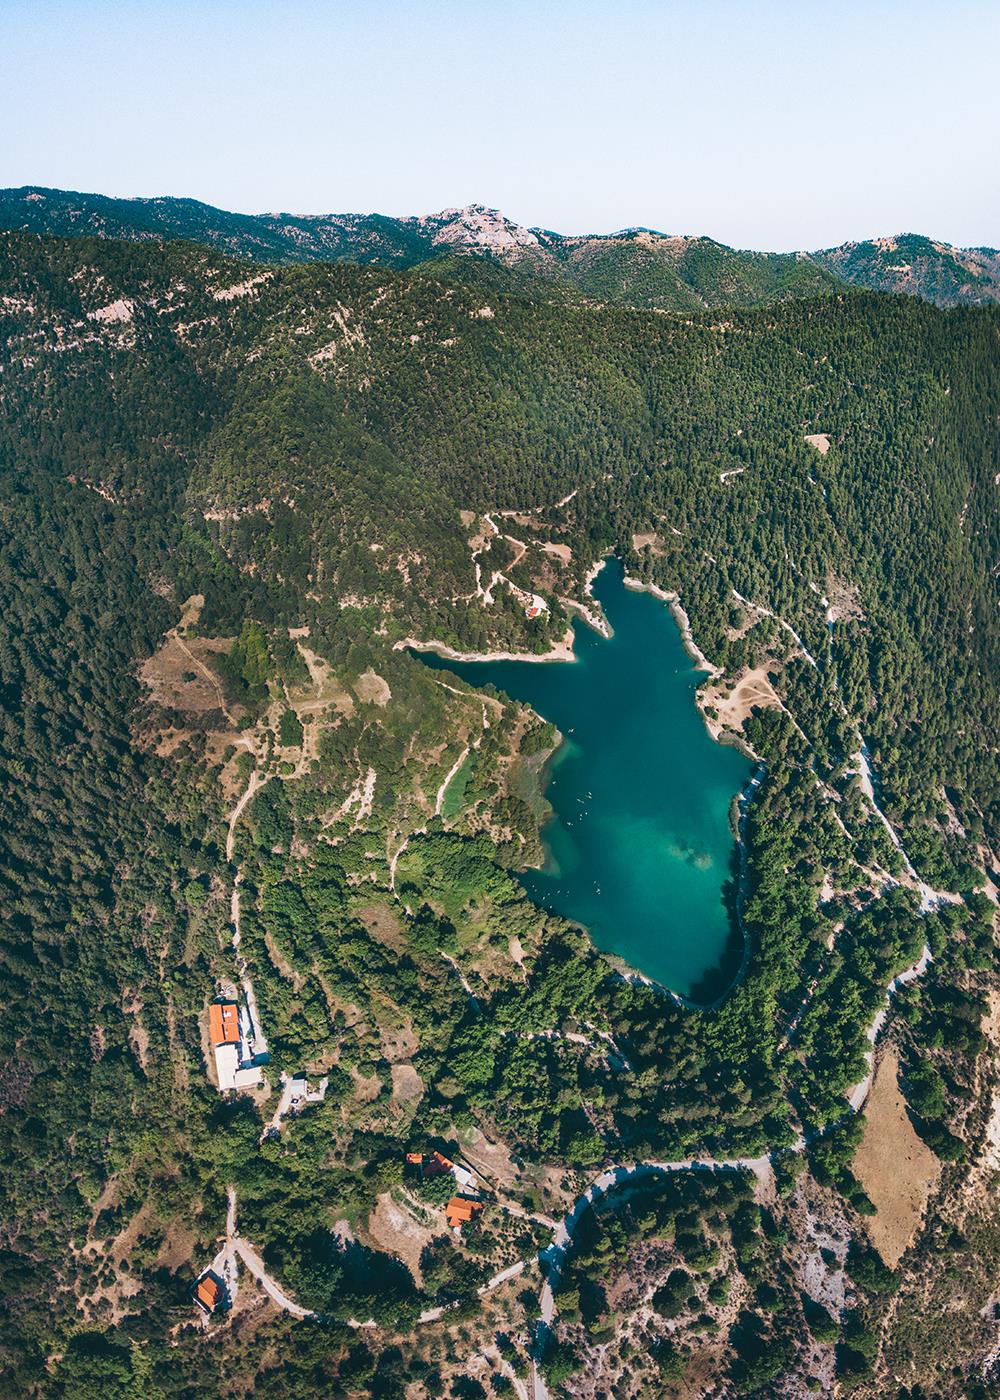 Ταξιδιωτικό γραφείο Mavrogiannis: Λίμνη Τσιβλού